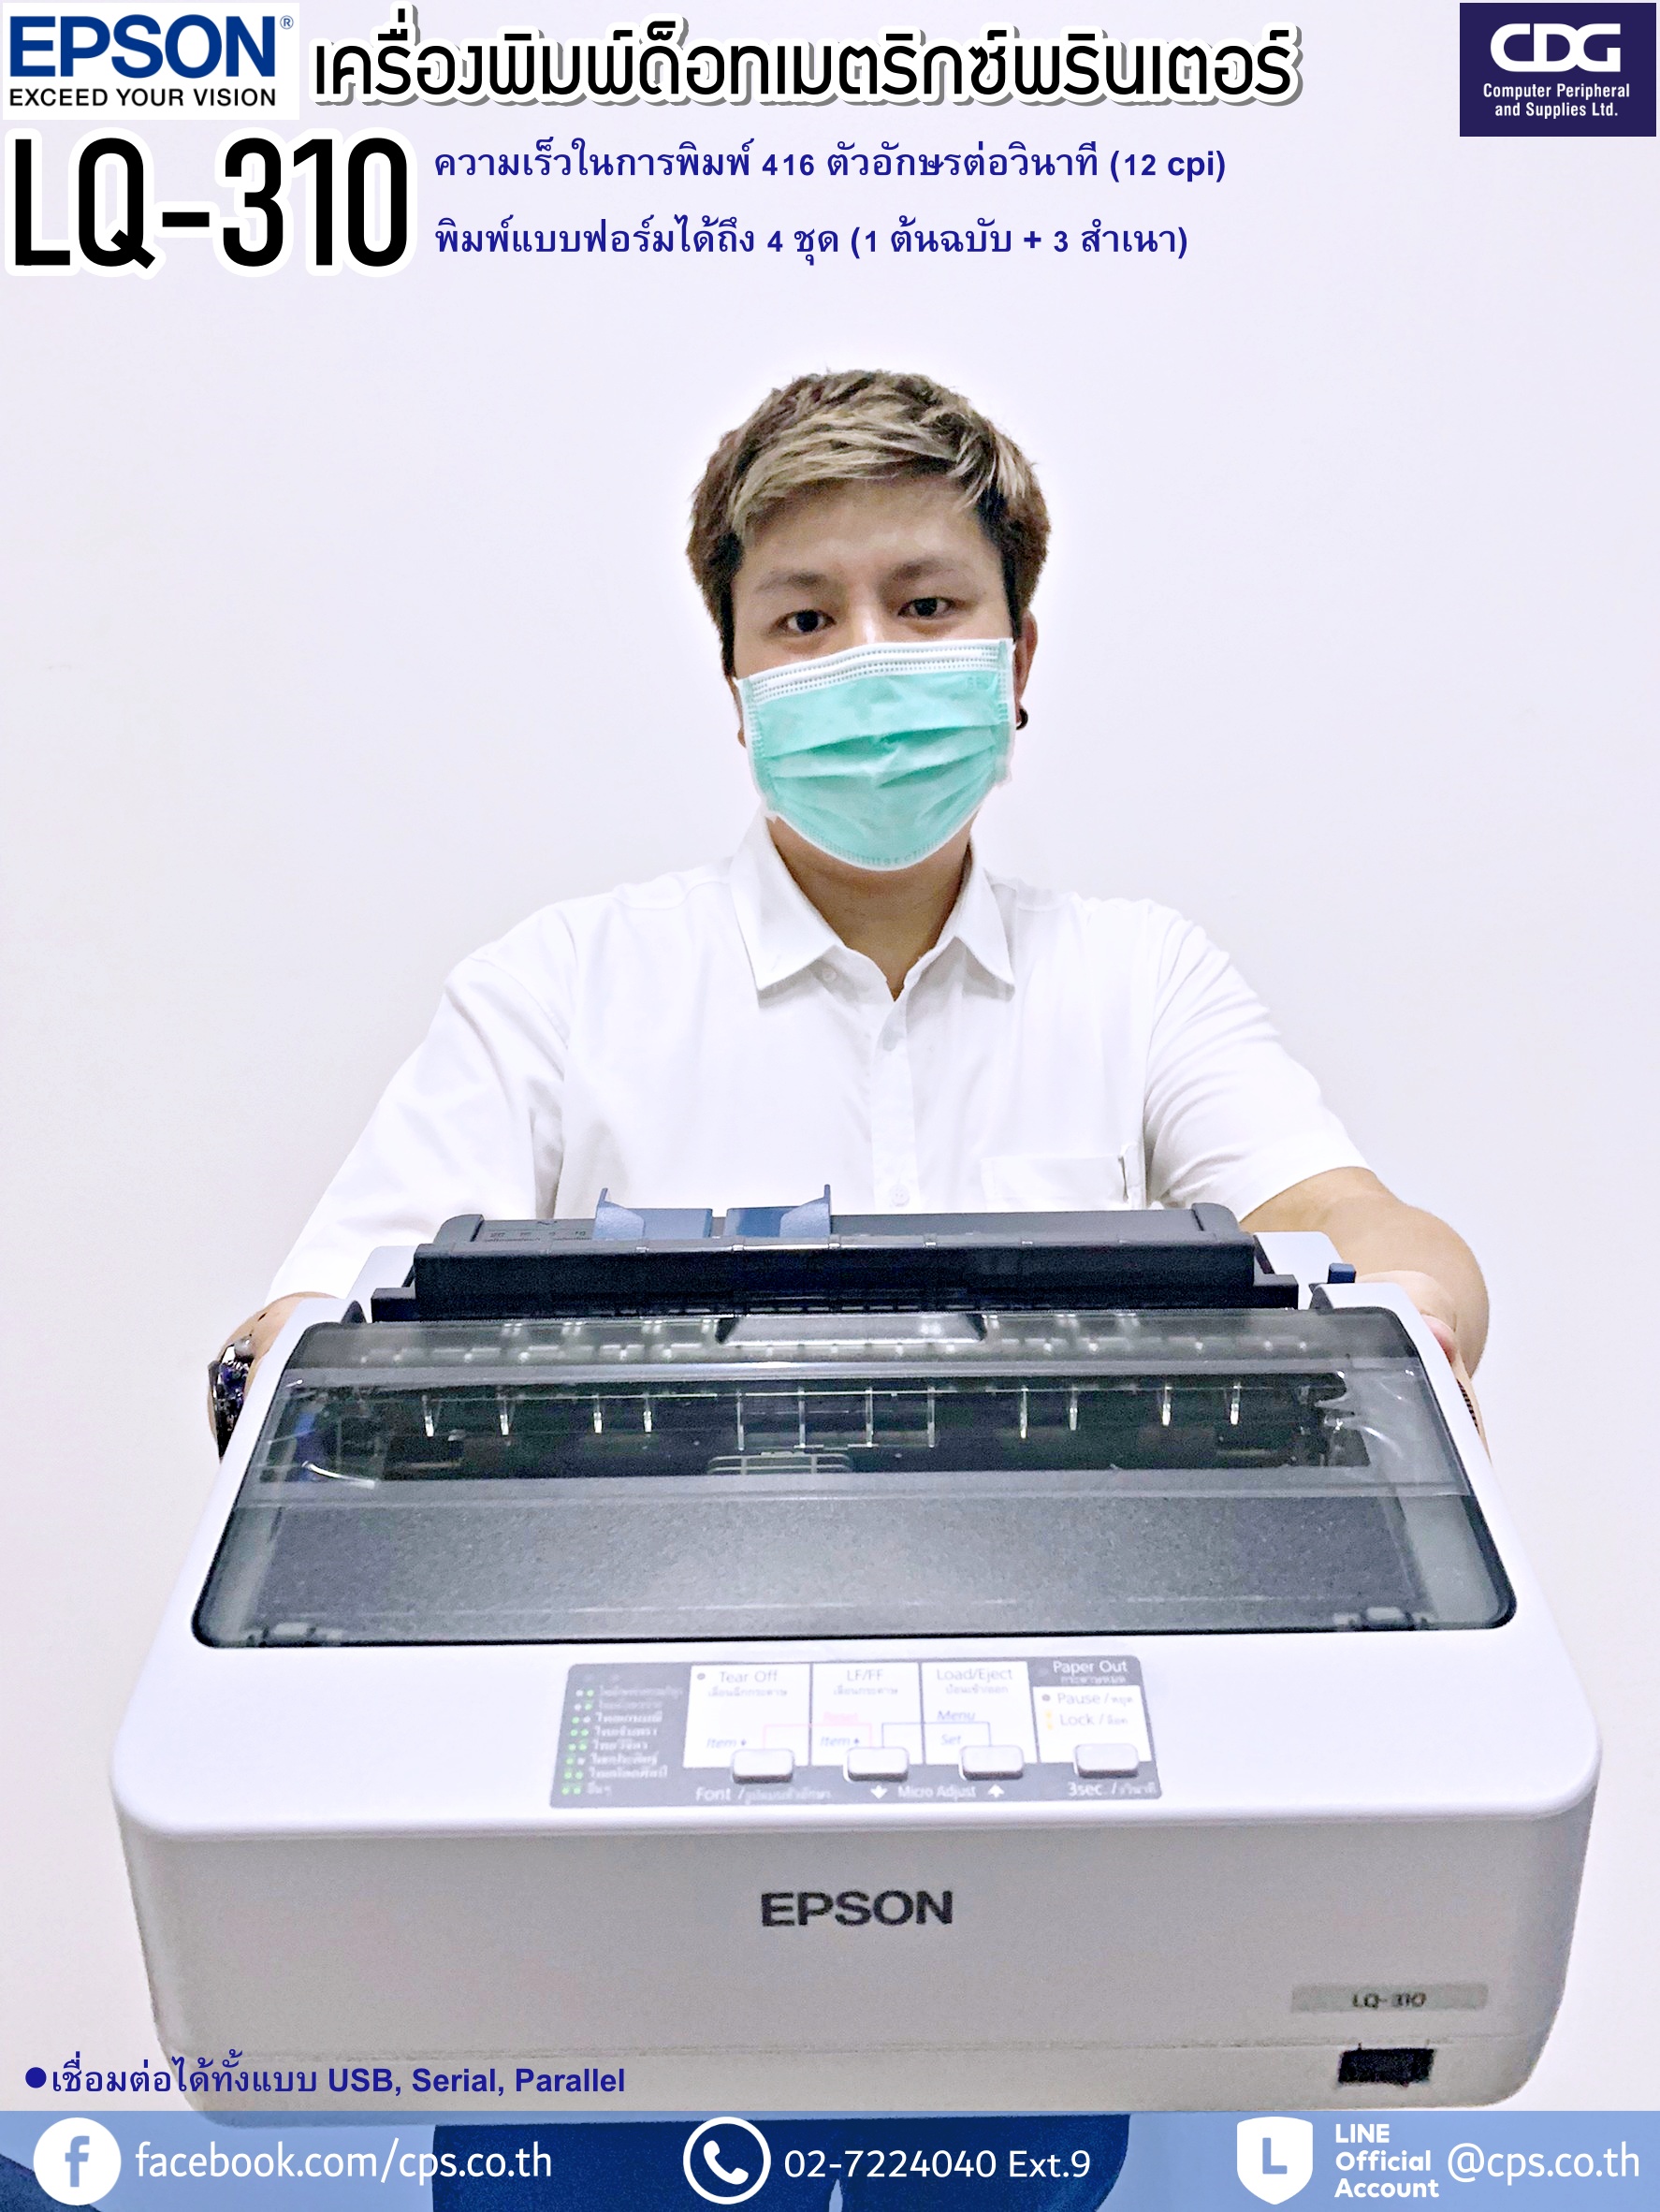 เครื่องพิมพ์ดอทเมตริกซ์ Epson รุ่น LQ-310